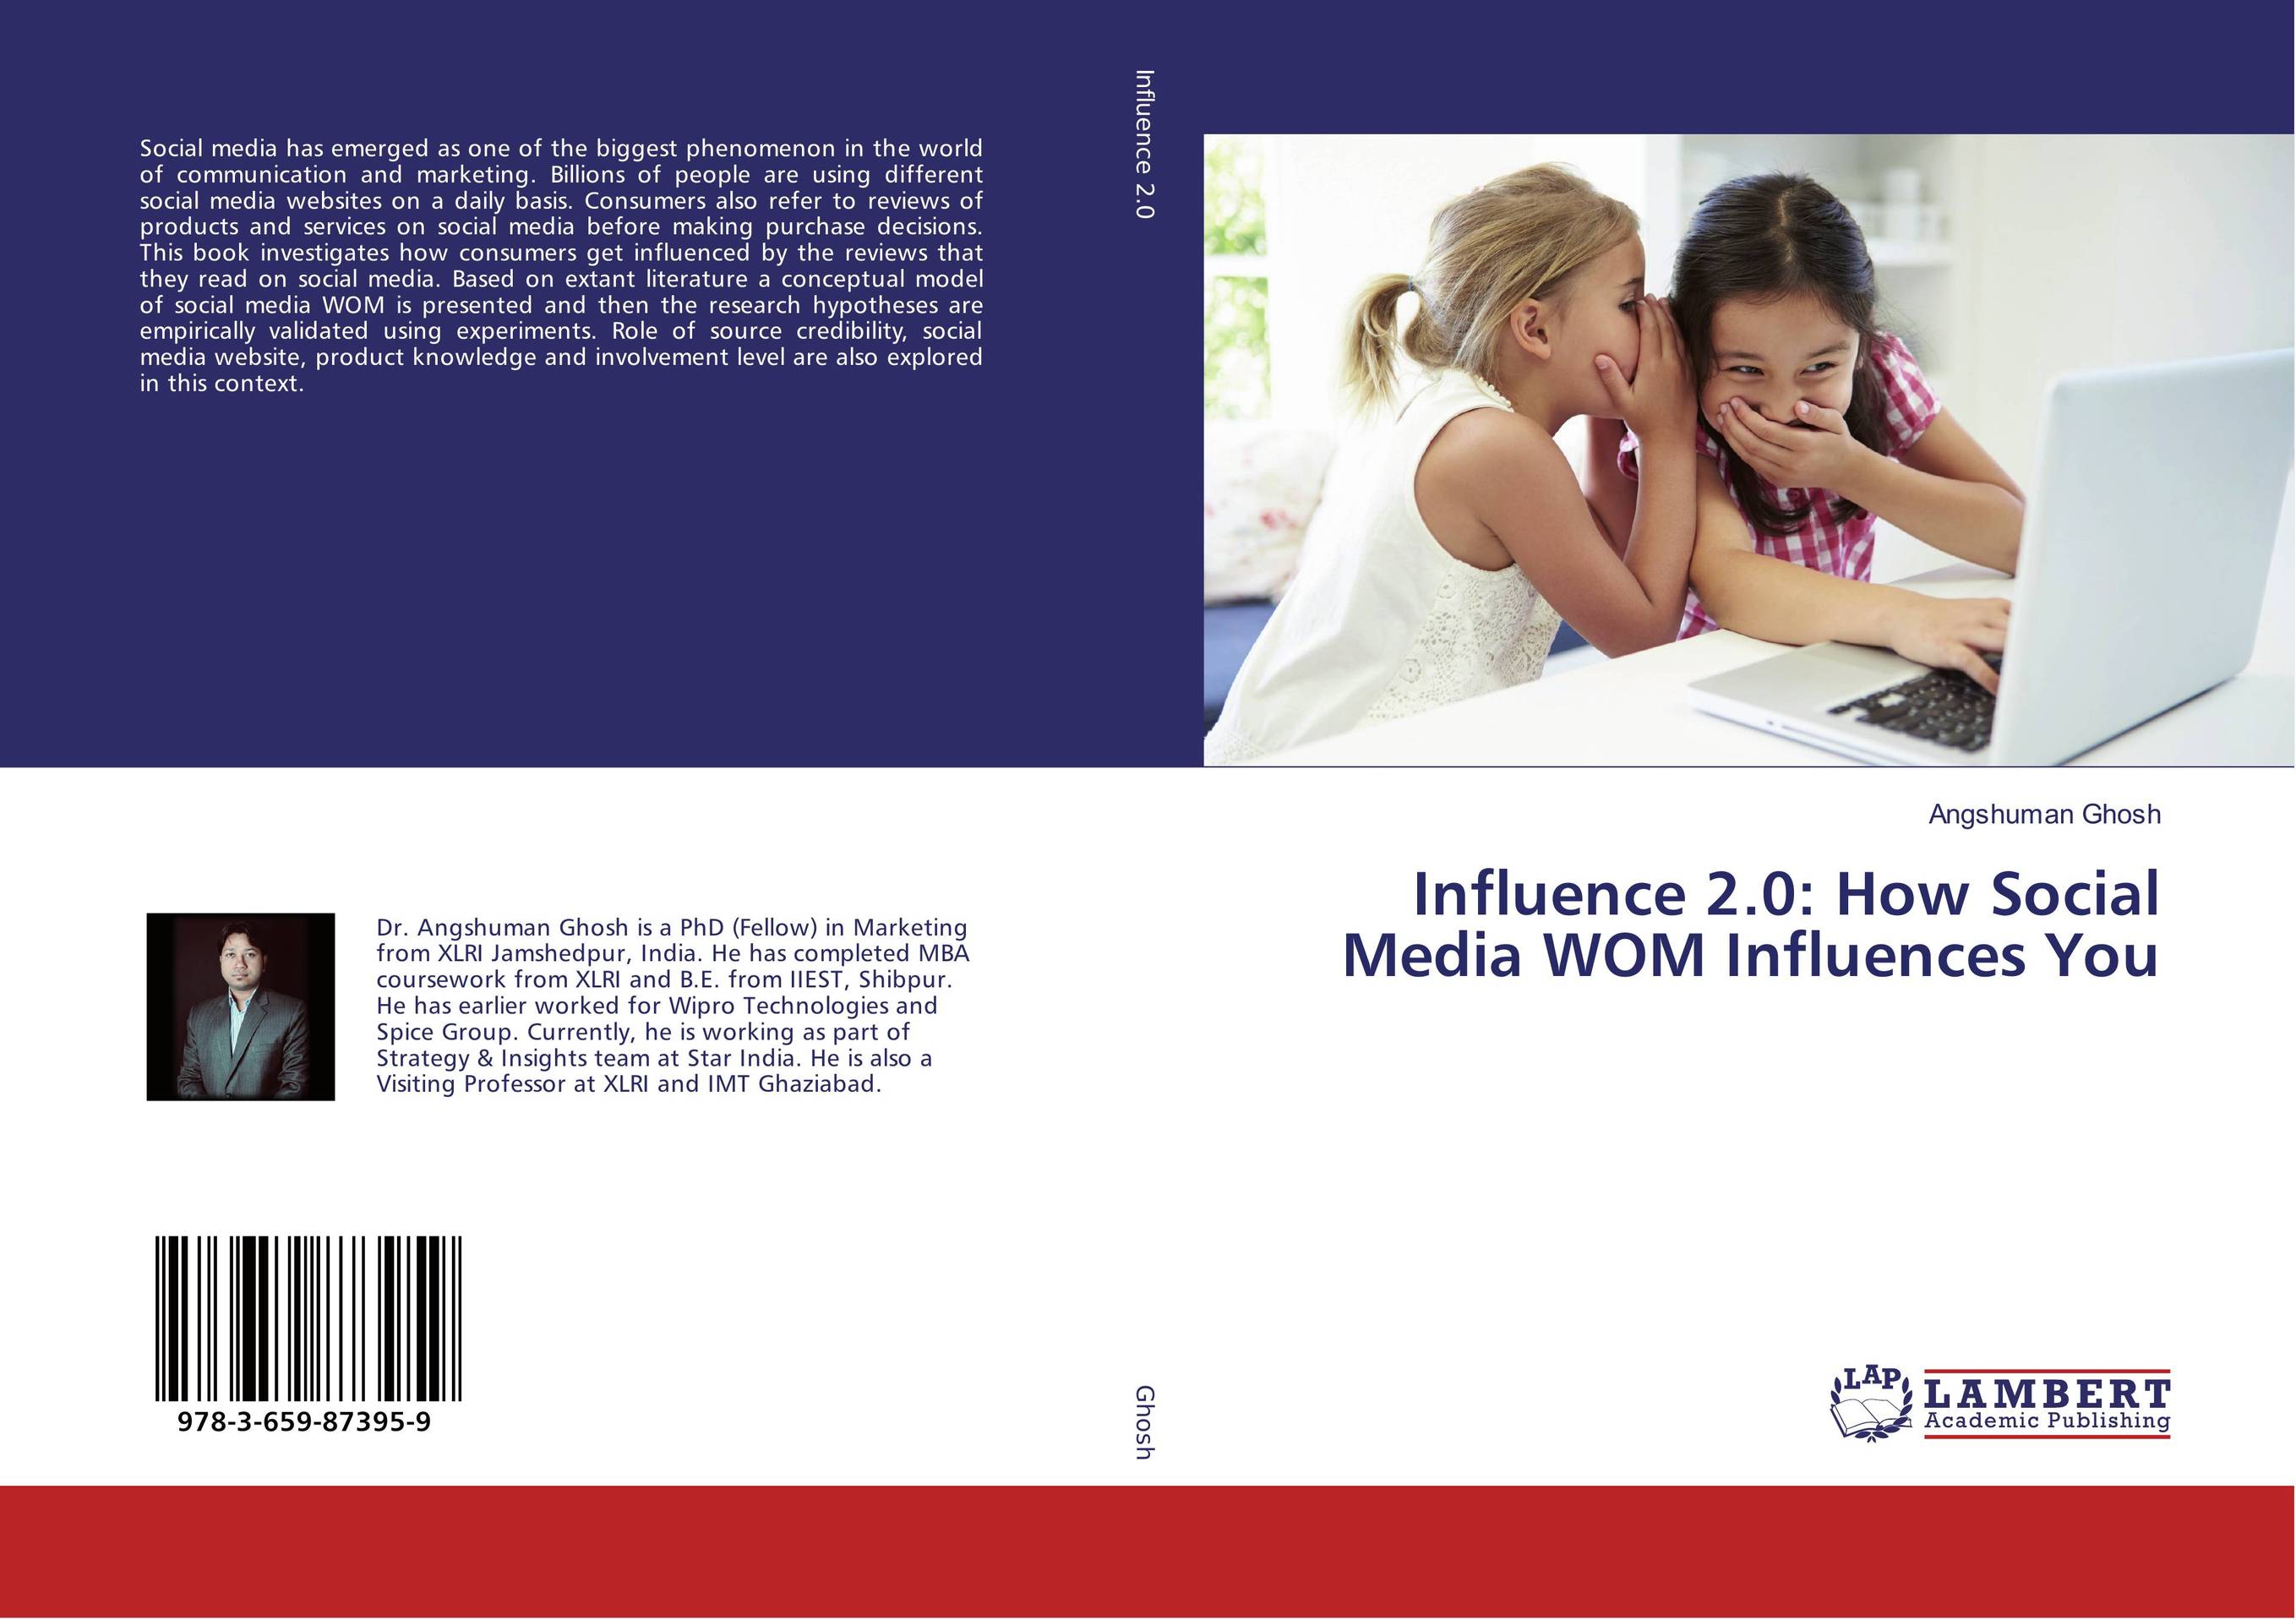 Influence 2.0: How Social Media WOM Influences You